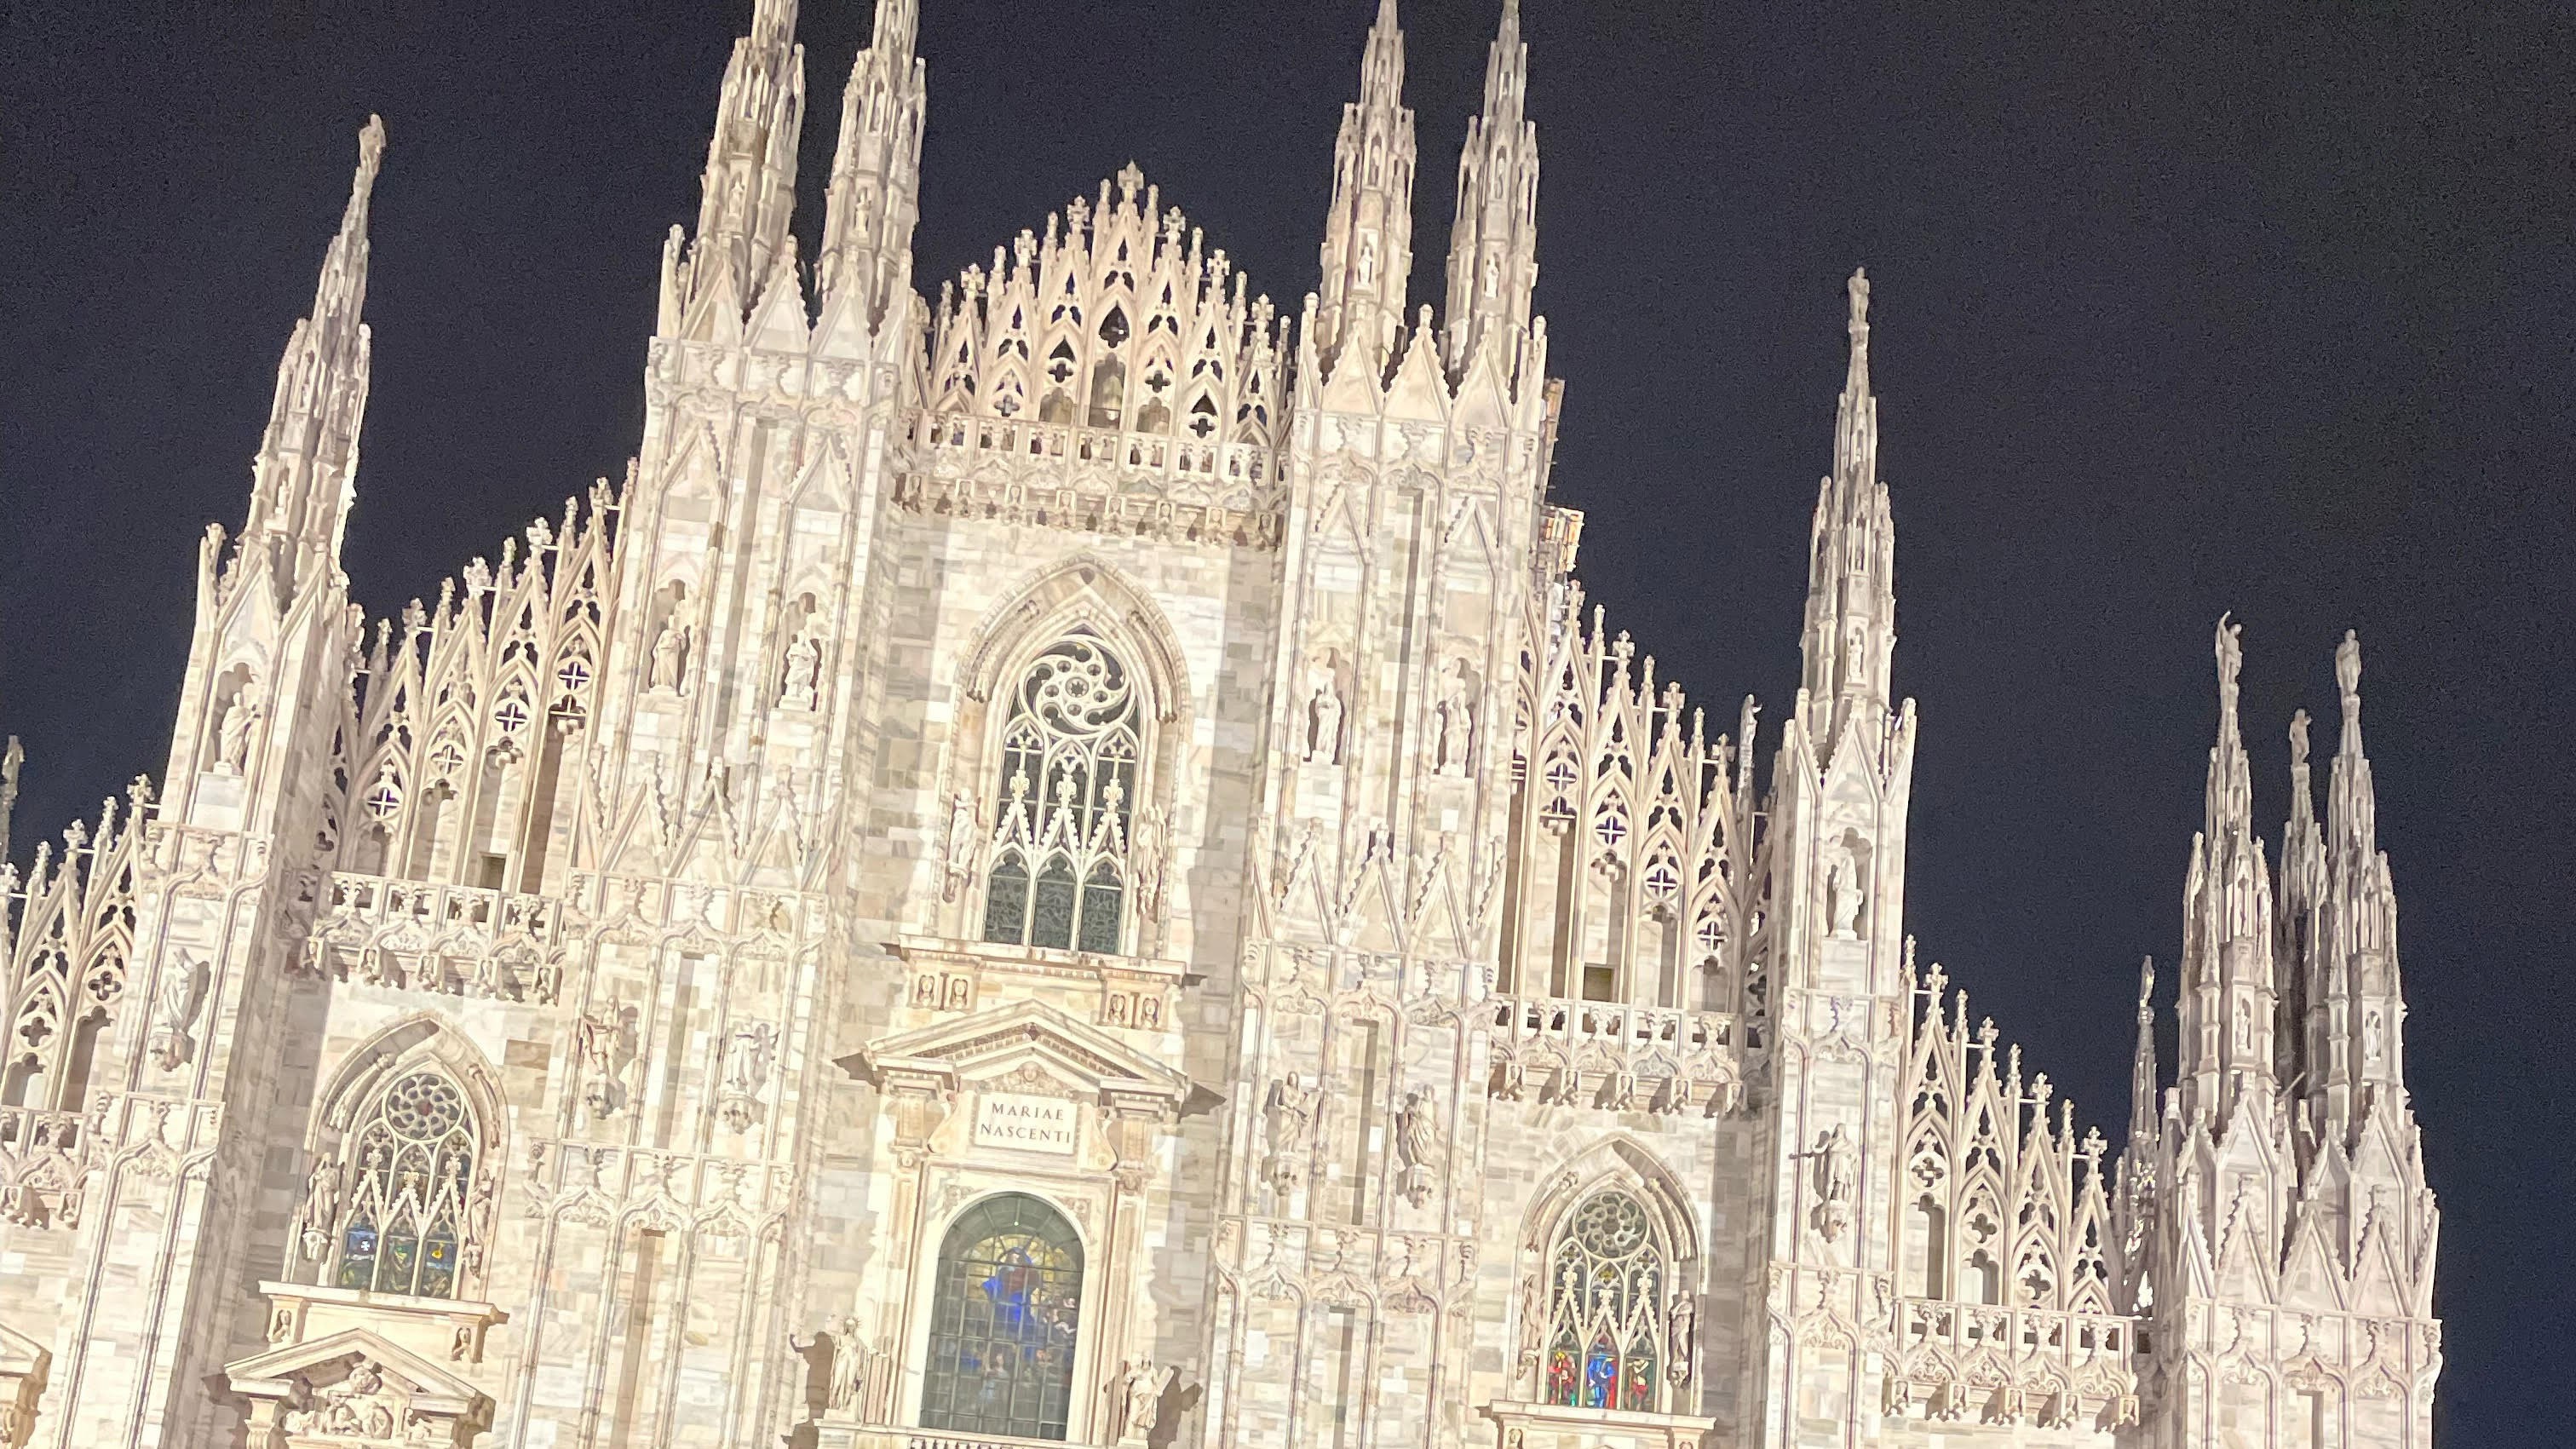 The Duomo in Milan, Italy. Photo courtesy of Leonardo Hall ’23.